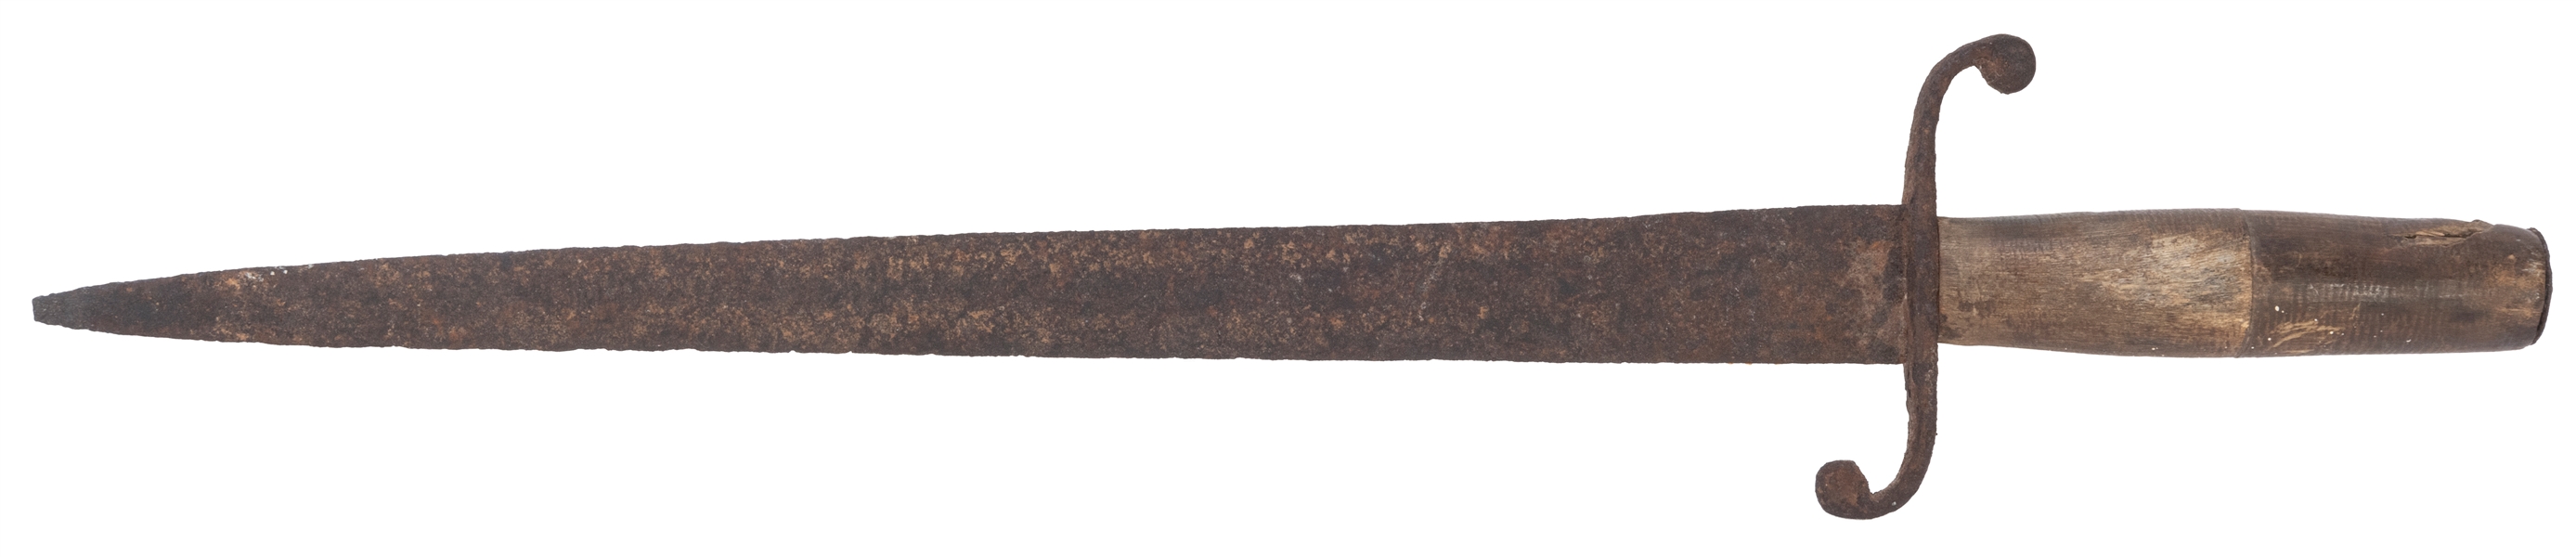  Civil War Era Dagger. Hand forged, wooden handle. Length 16...